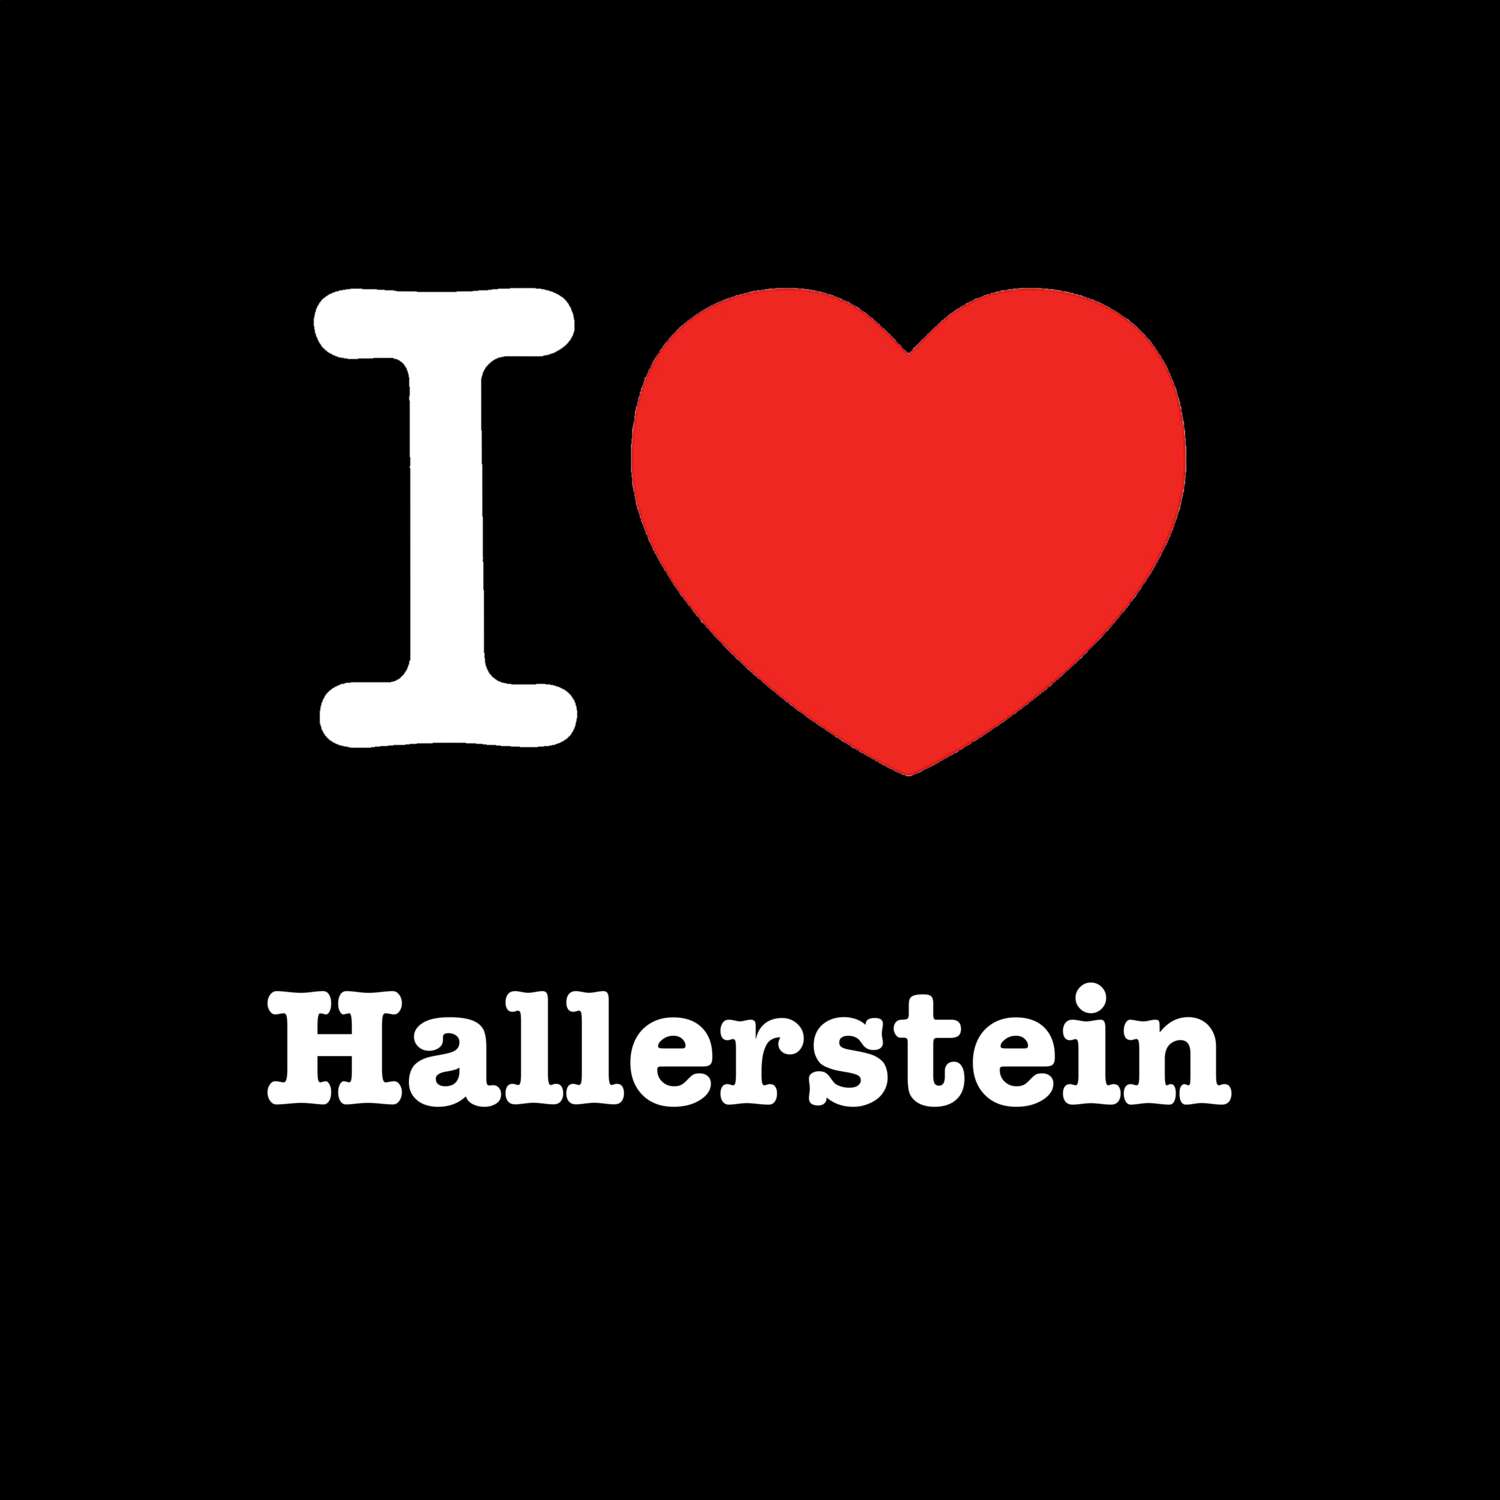 Hallerstein T-Shirt »I love«